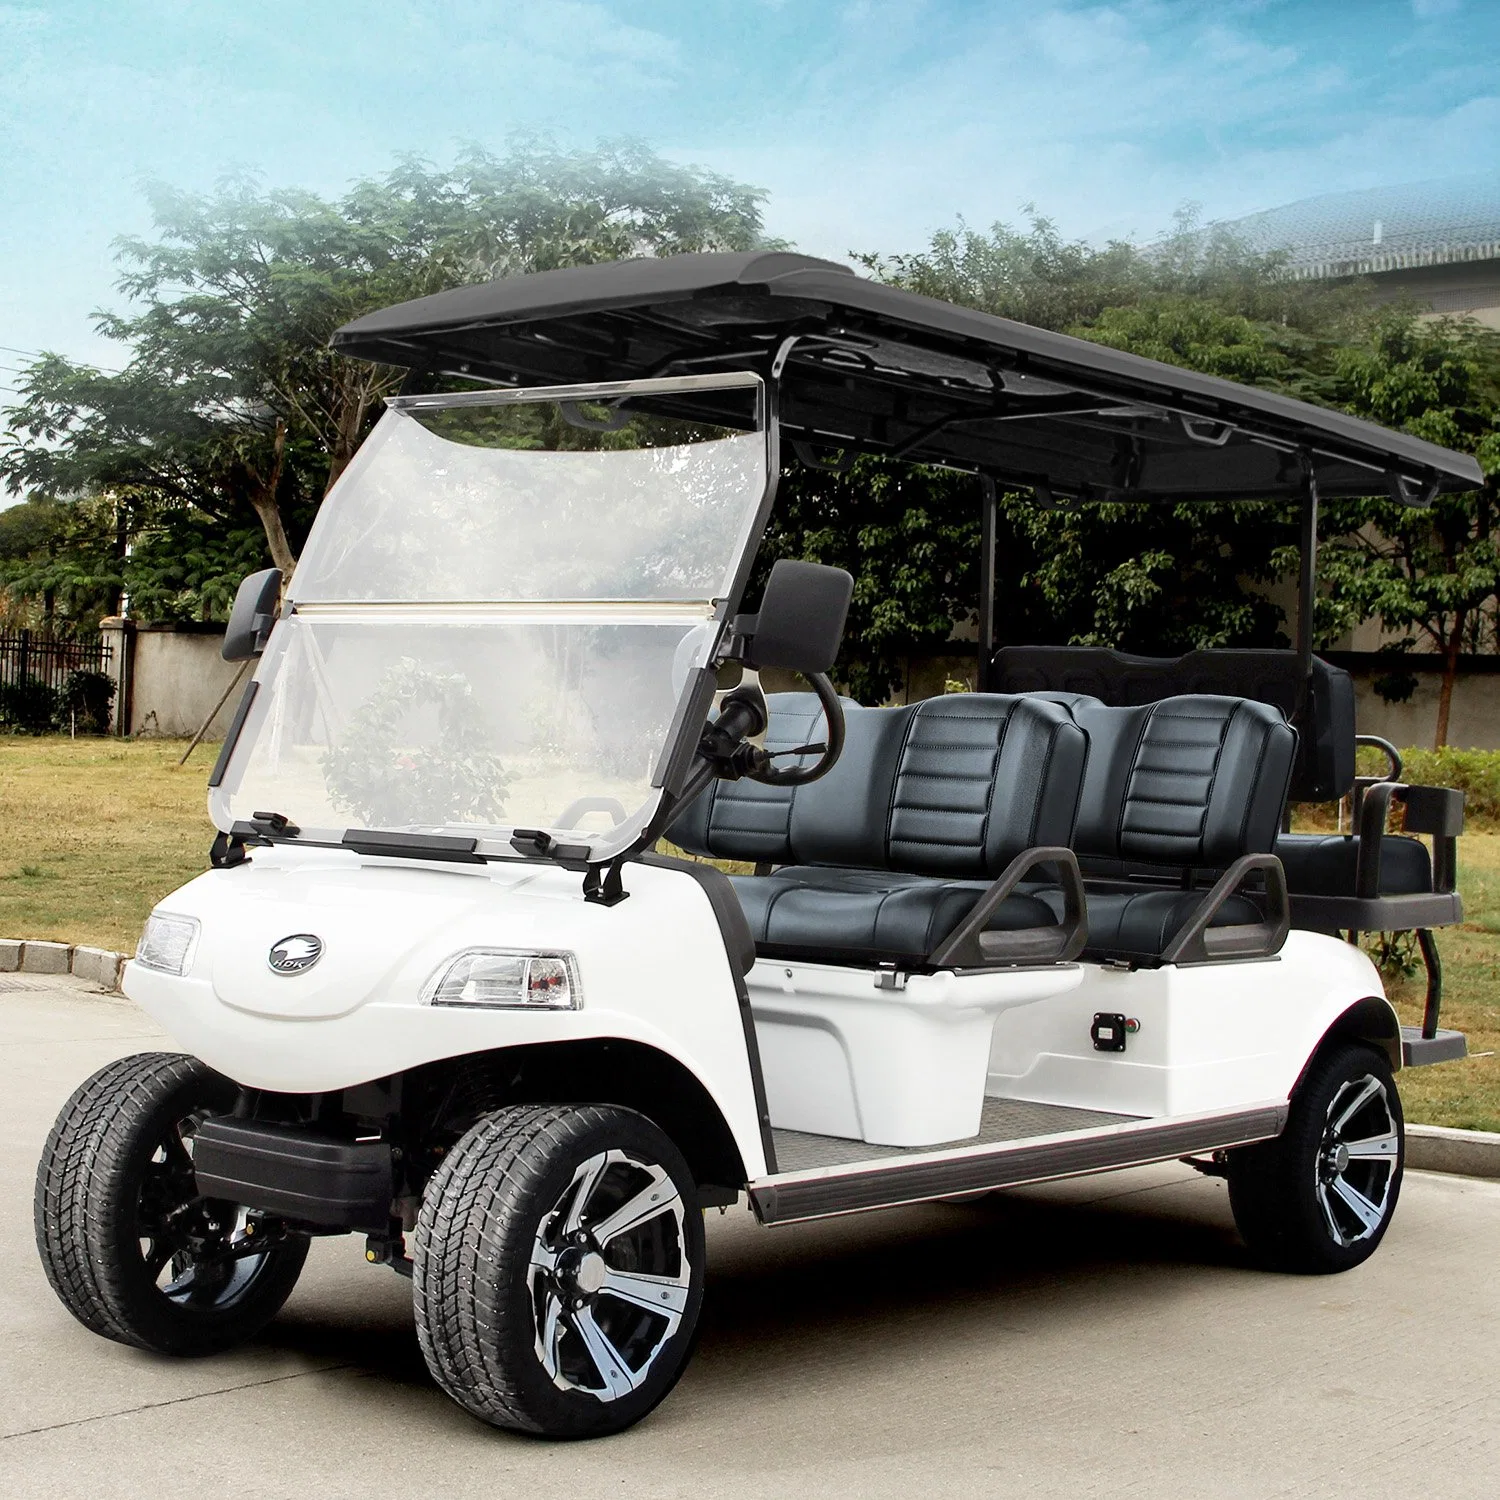 6 plazas de los asientos de alta potencia Flip Flop coche de golf eléctrico con batería de litio